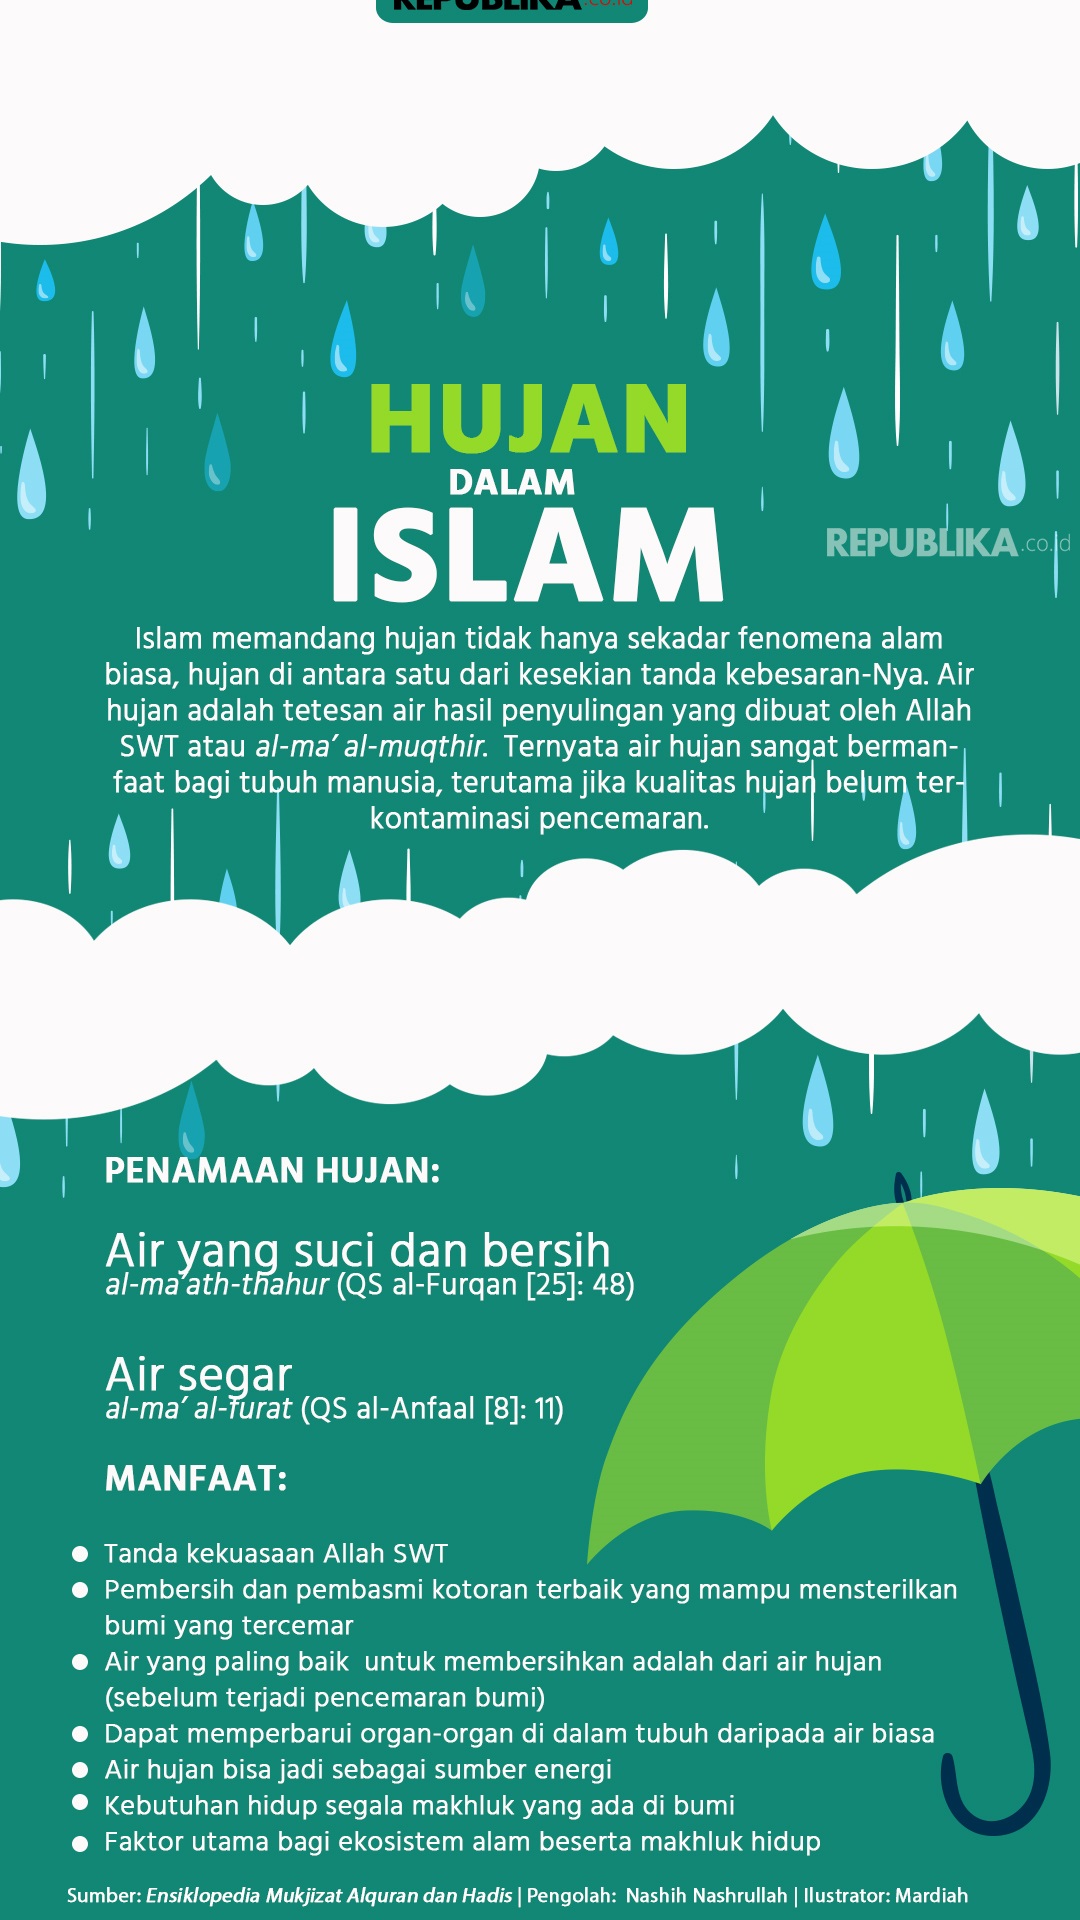 Islam pawang hujan menurut Pawang Hujan